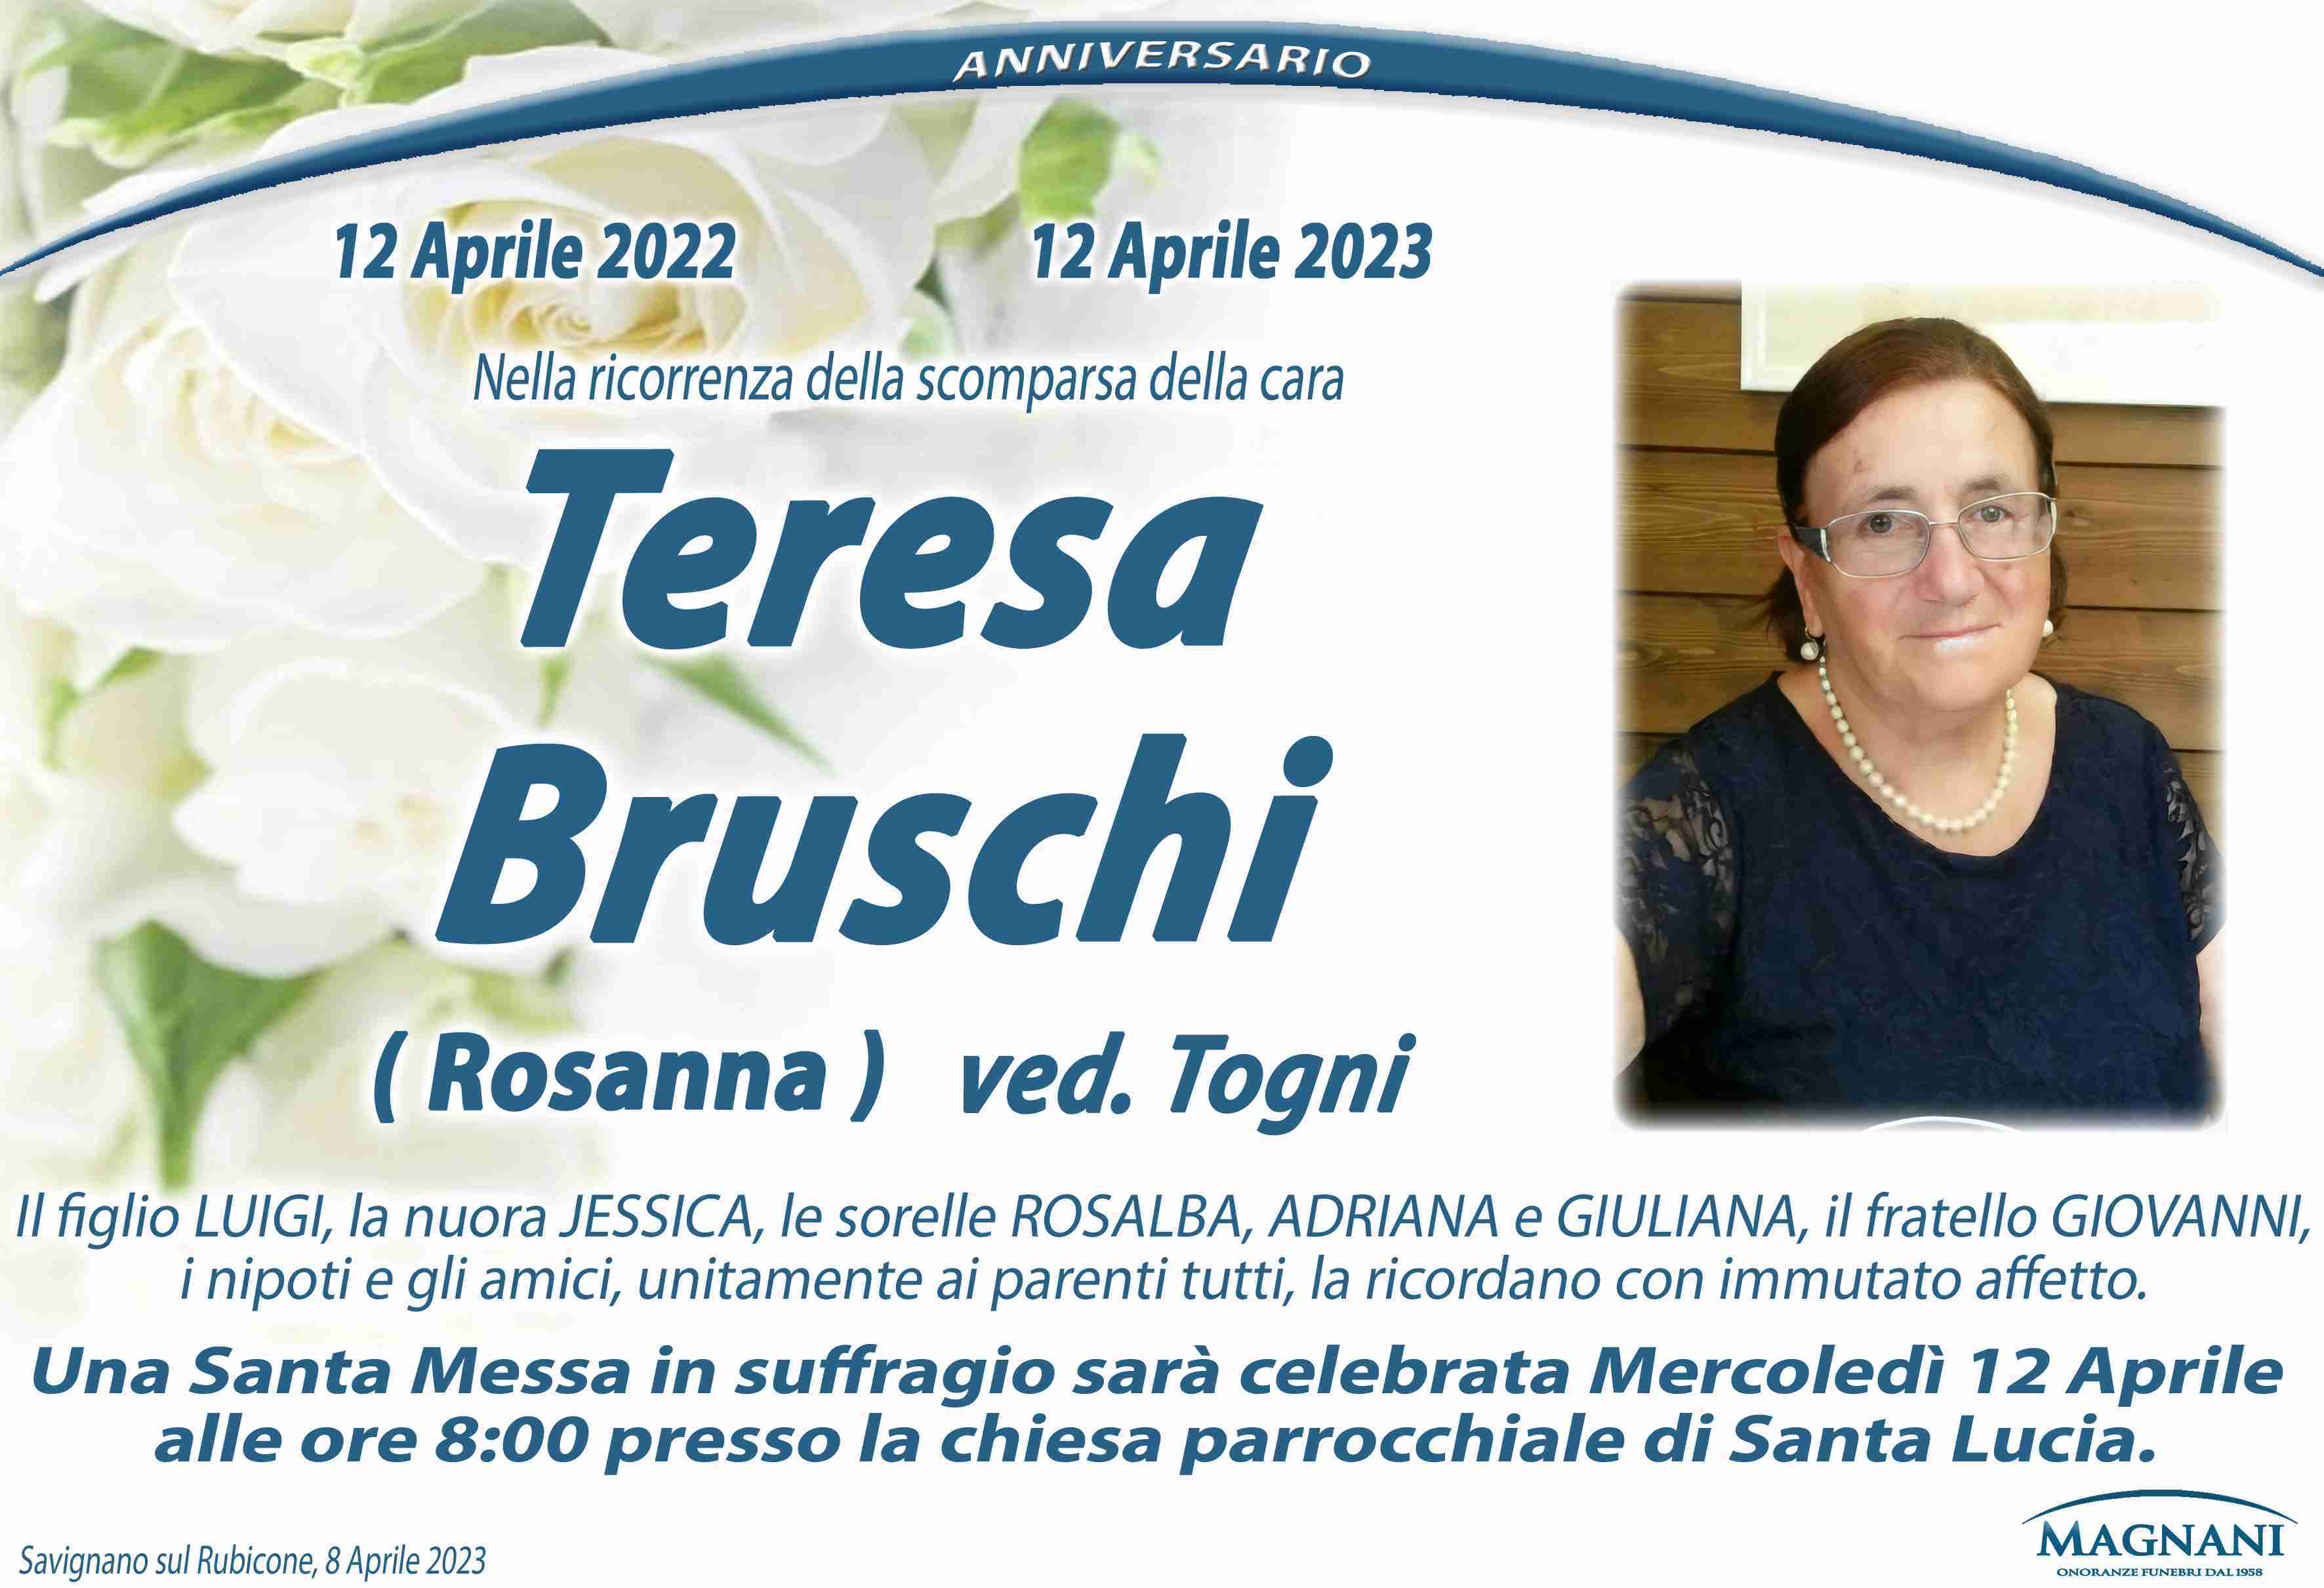 Teresa Bruschi